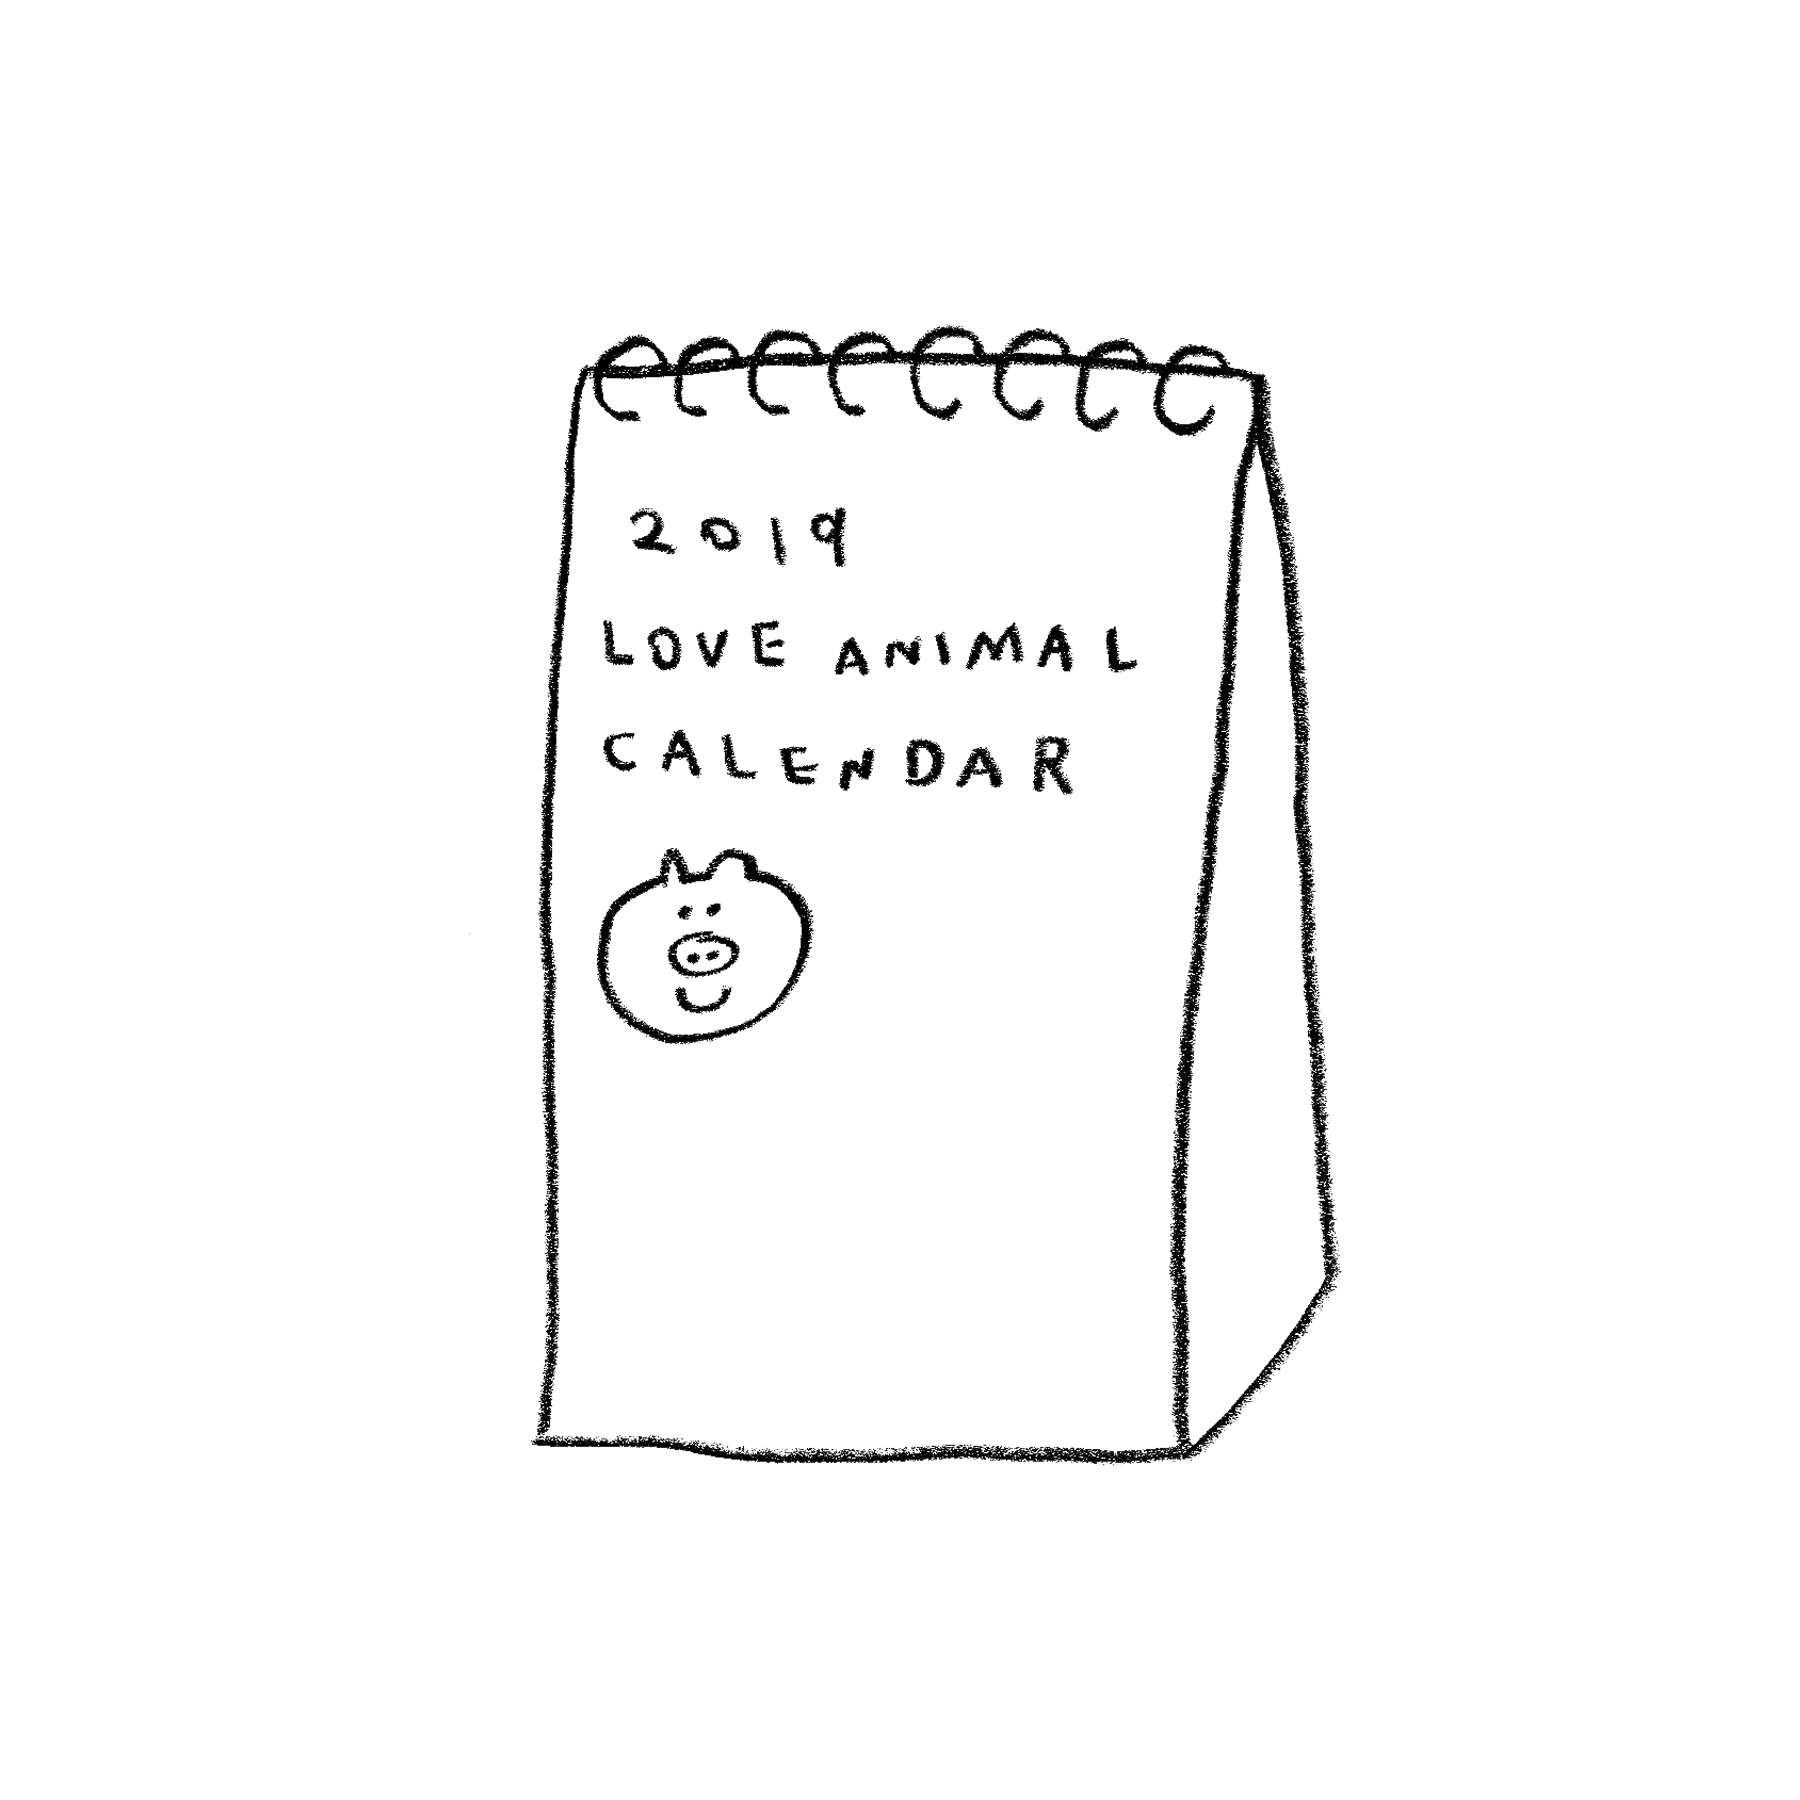 2019 LOVE ANIMAL CALENDAR